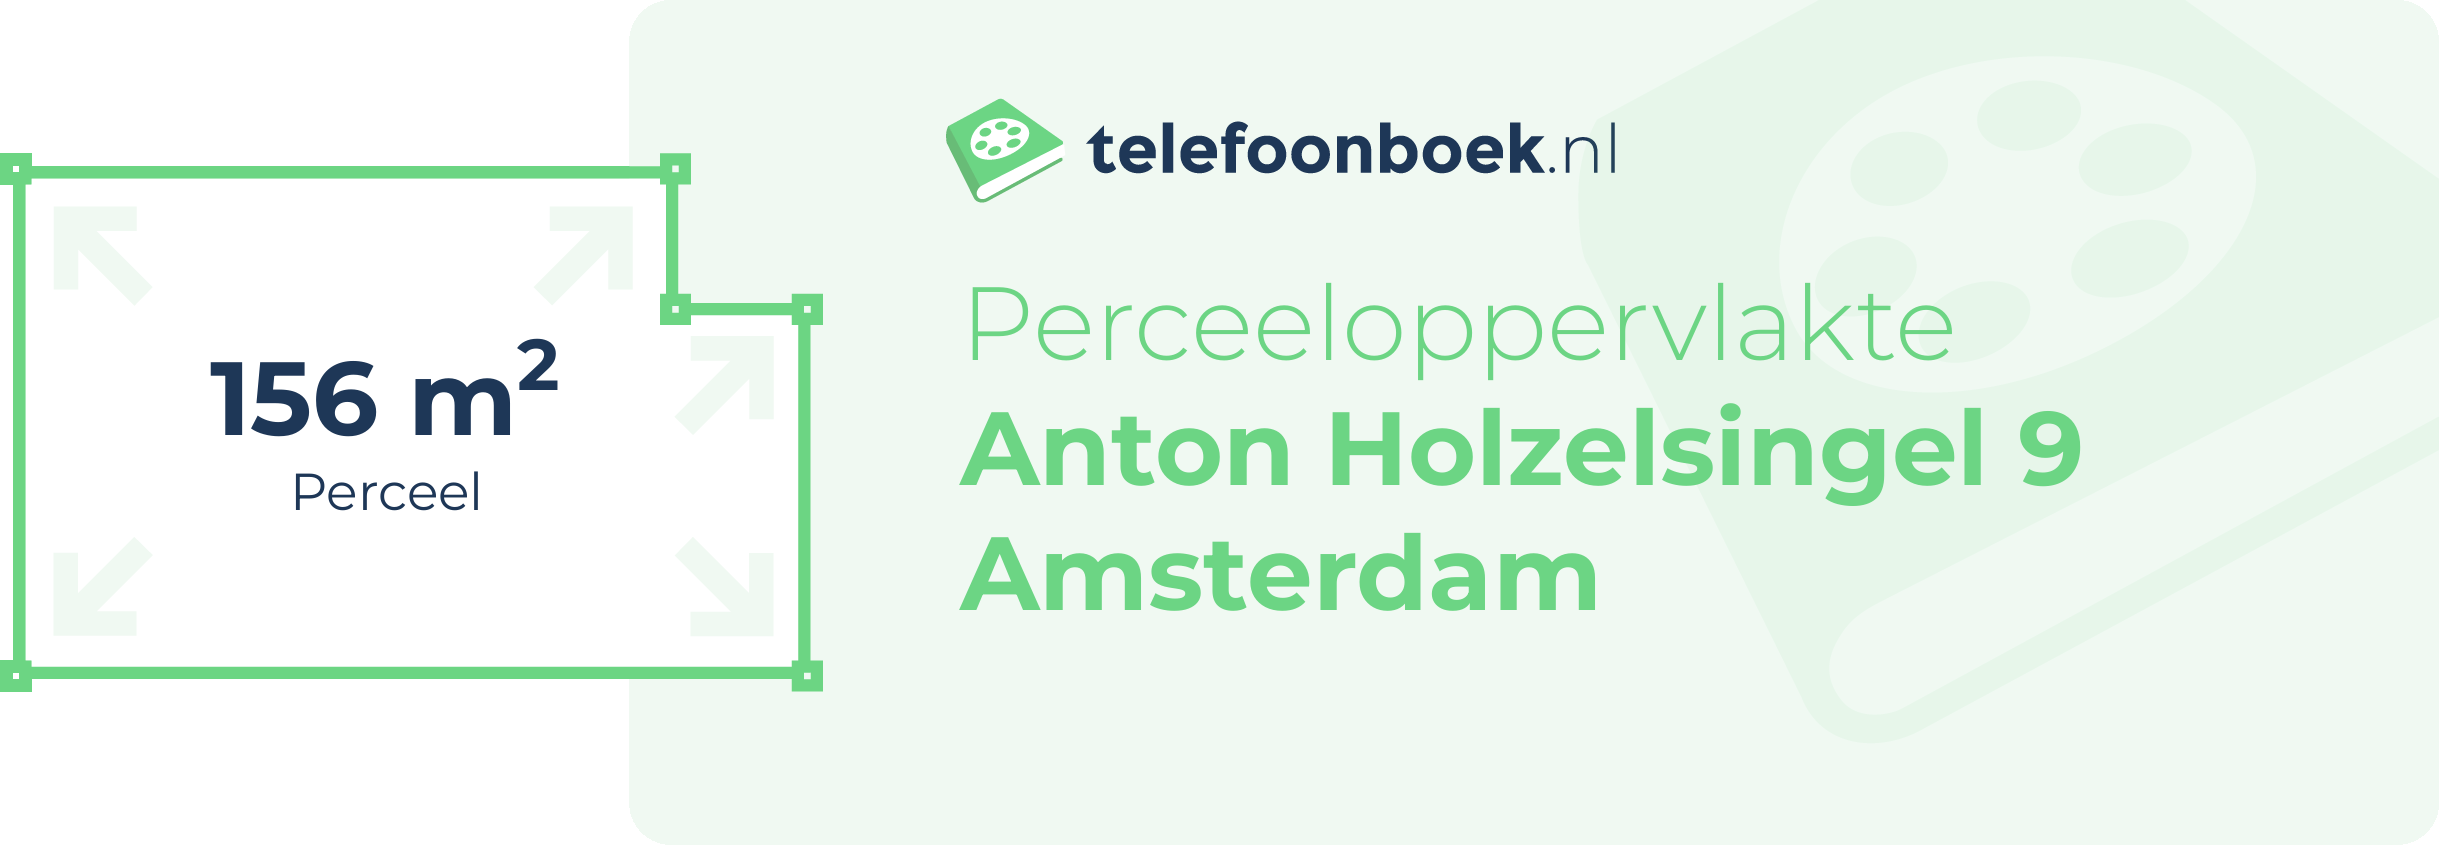 Perceeloppervlakte Anton Holzelsingel 9 Amsterdam